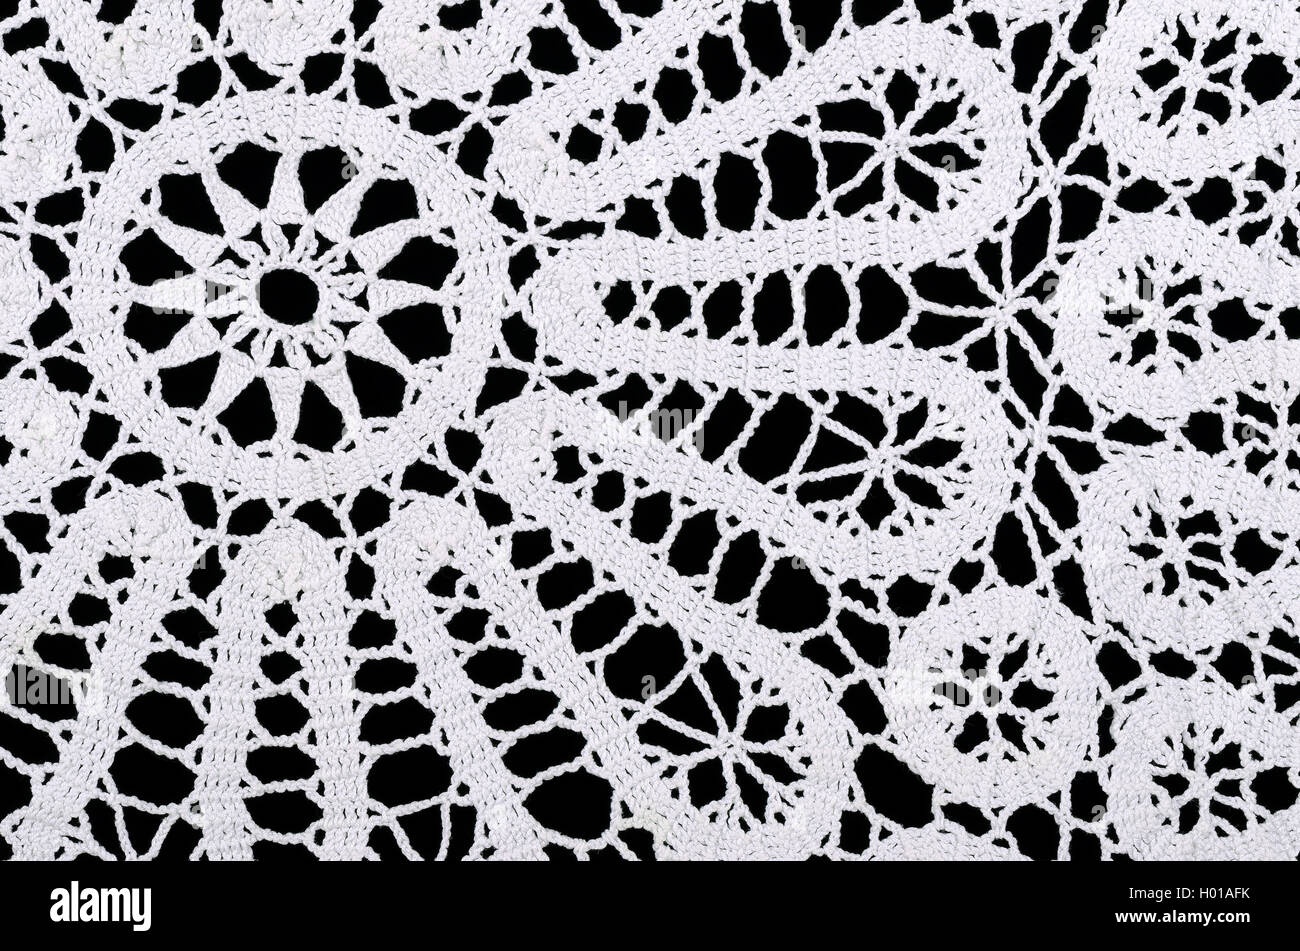 Stern und Kreise in eine weiße gehäkelte Deckchen. Häkeln ist ein Prozess der Schaffung Stoff durch Verzahnung Schleifen des Garns. Stockfoto